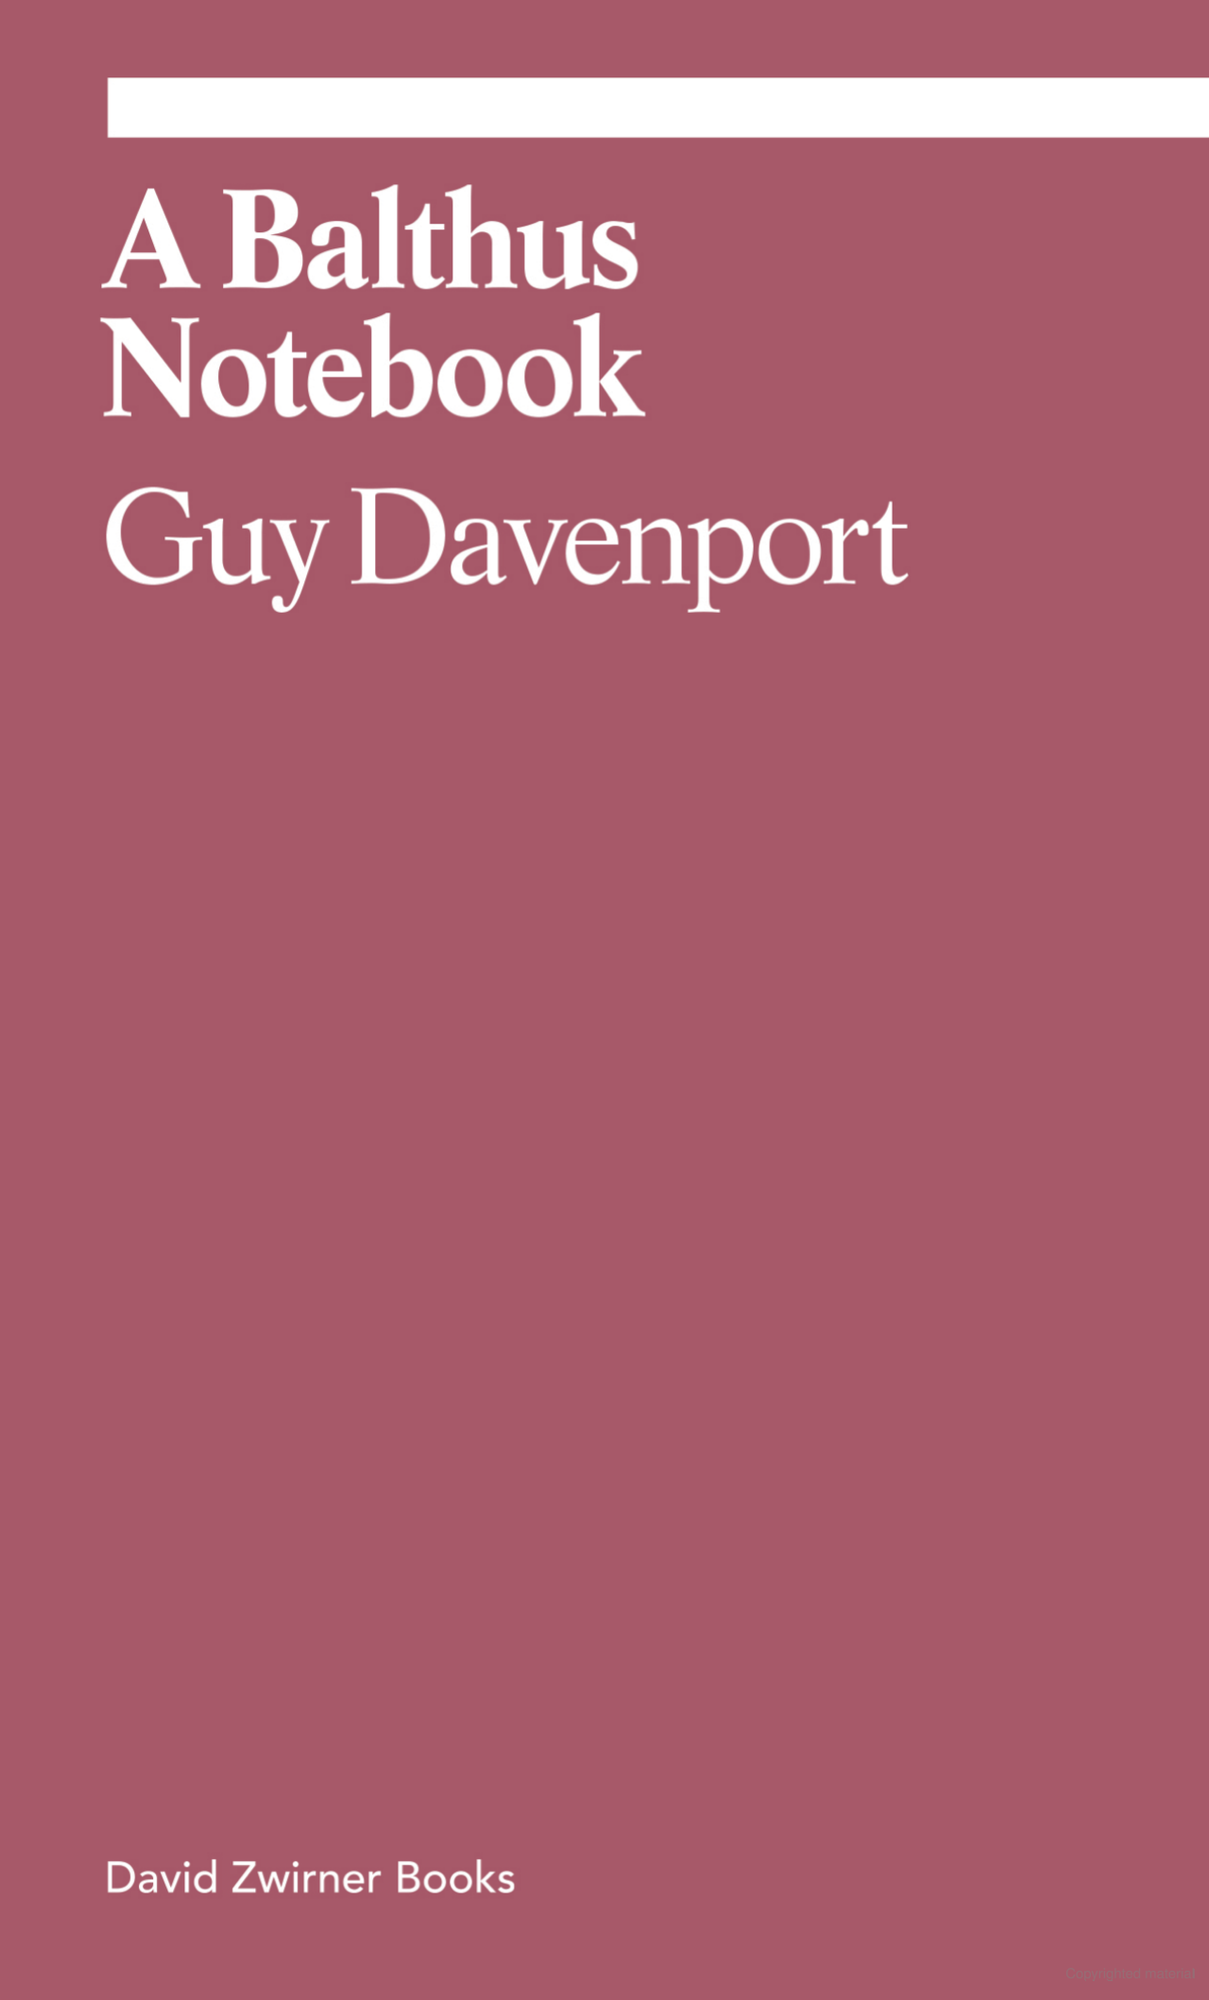 A Balthus Notebook: Guy Davenport